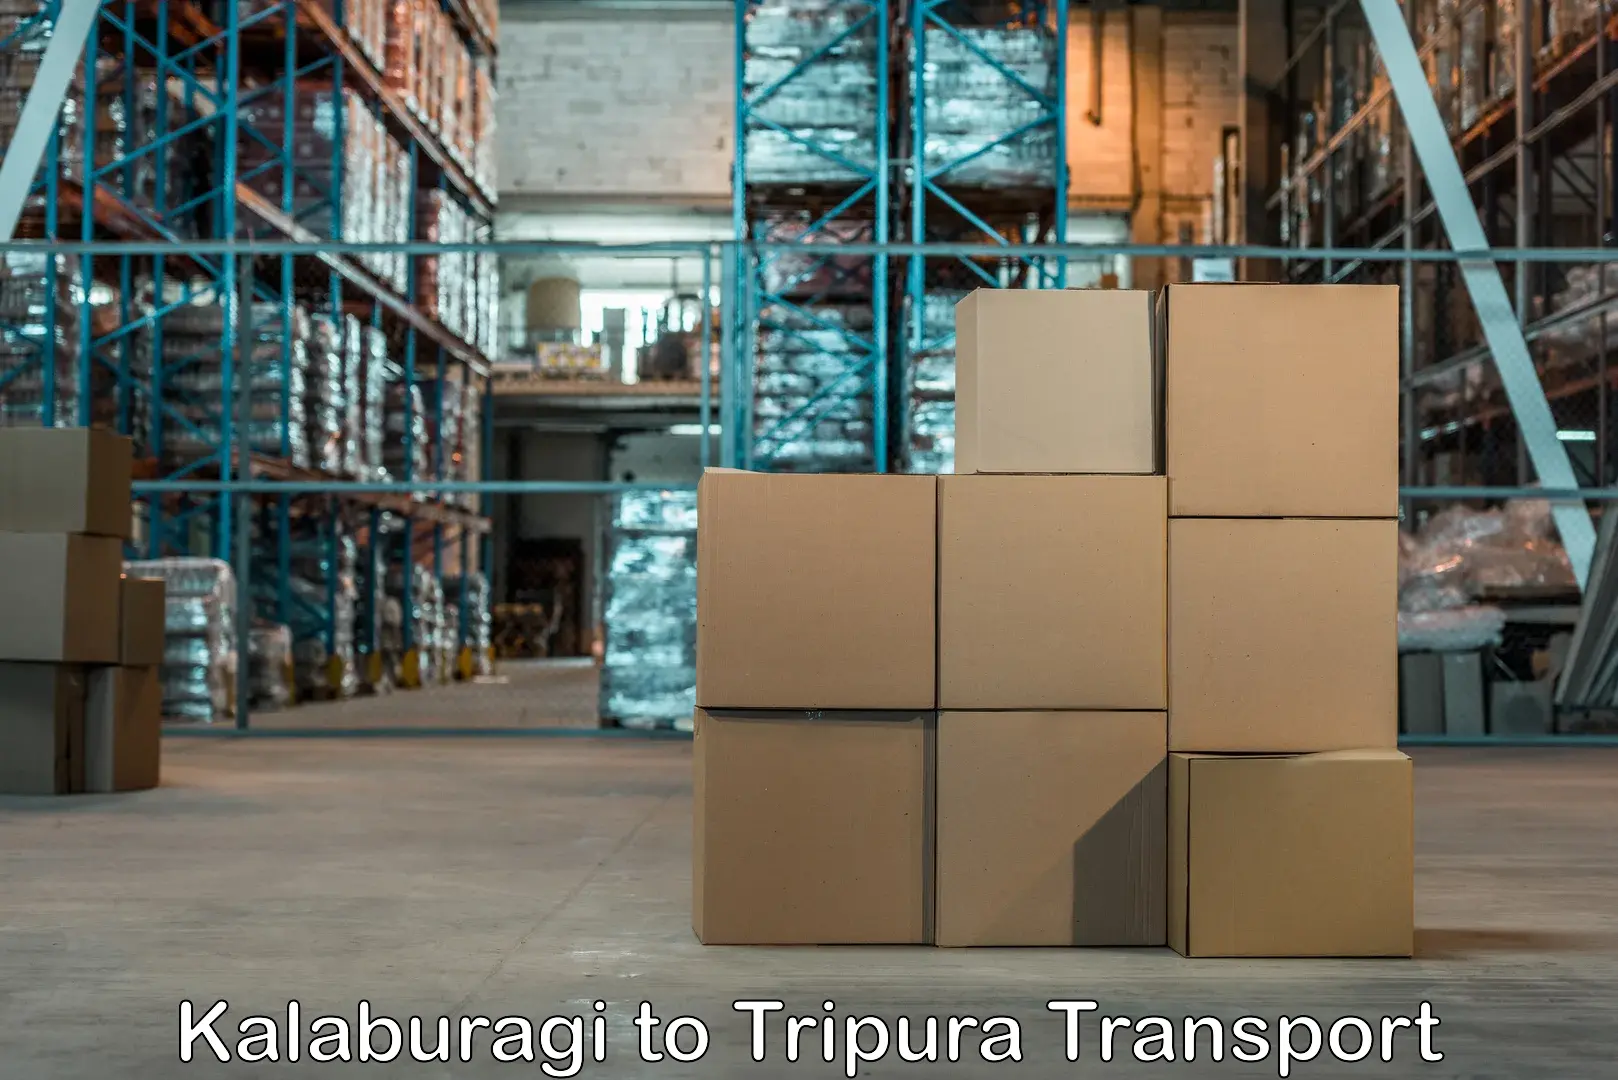 Two wheeler transport services Kalaburagi to Tripura